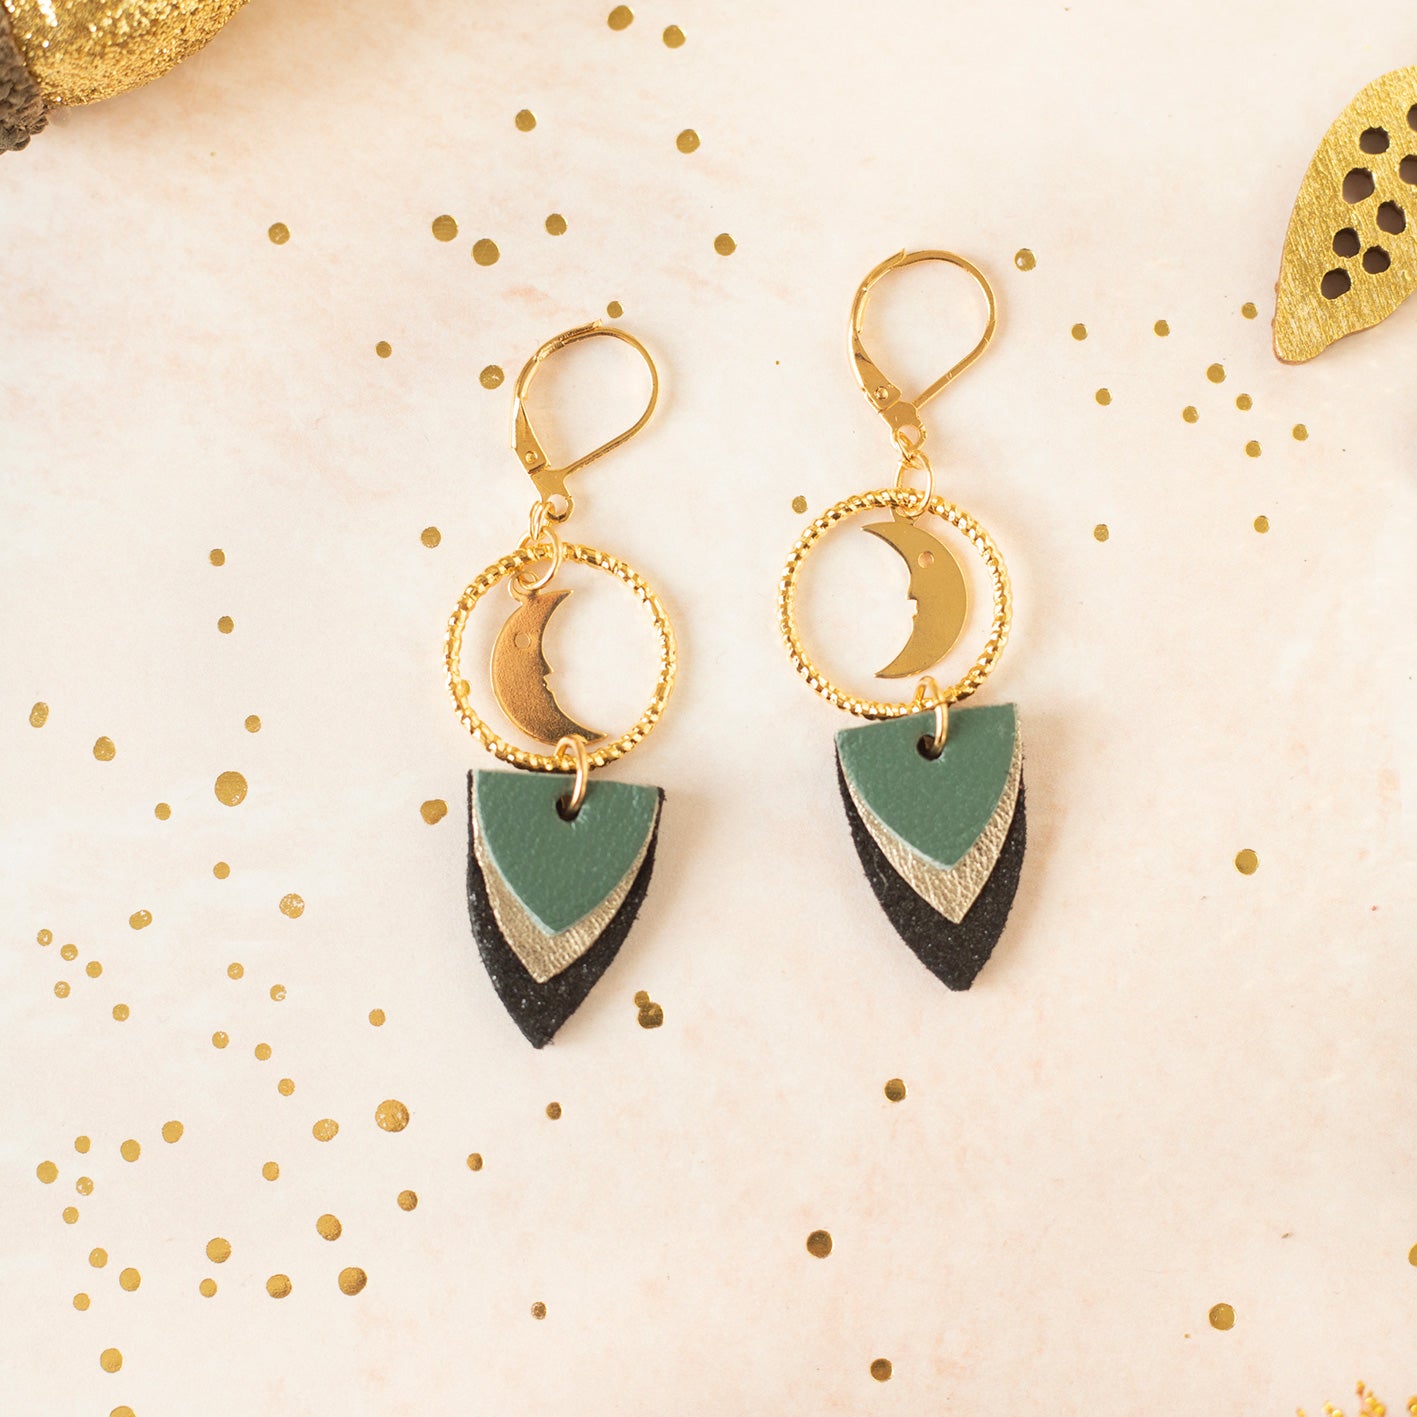 Green Ava earrings